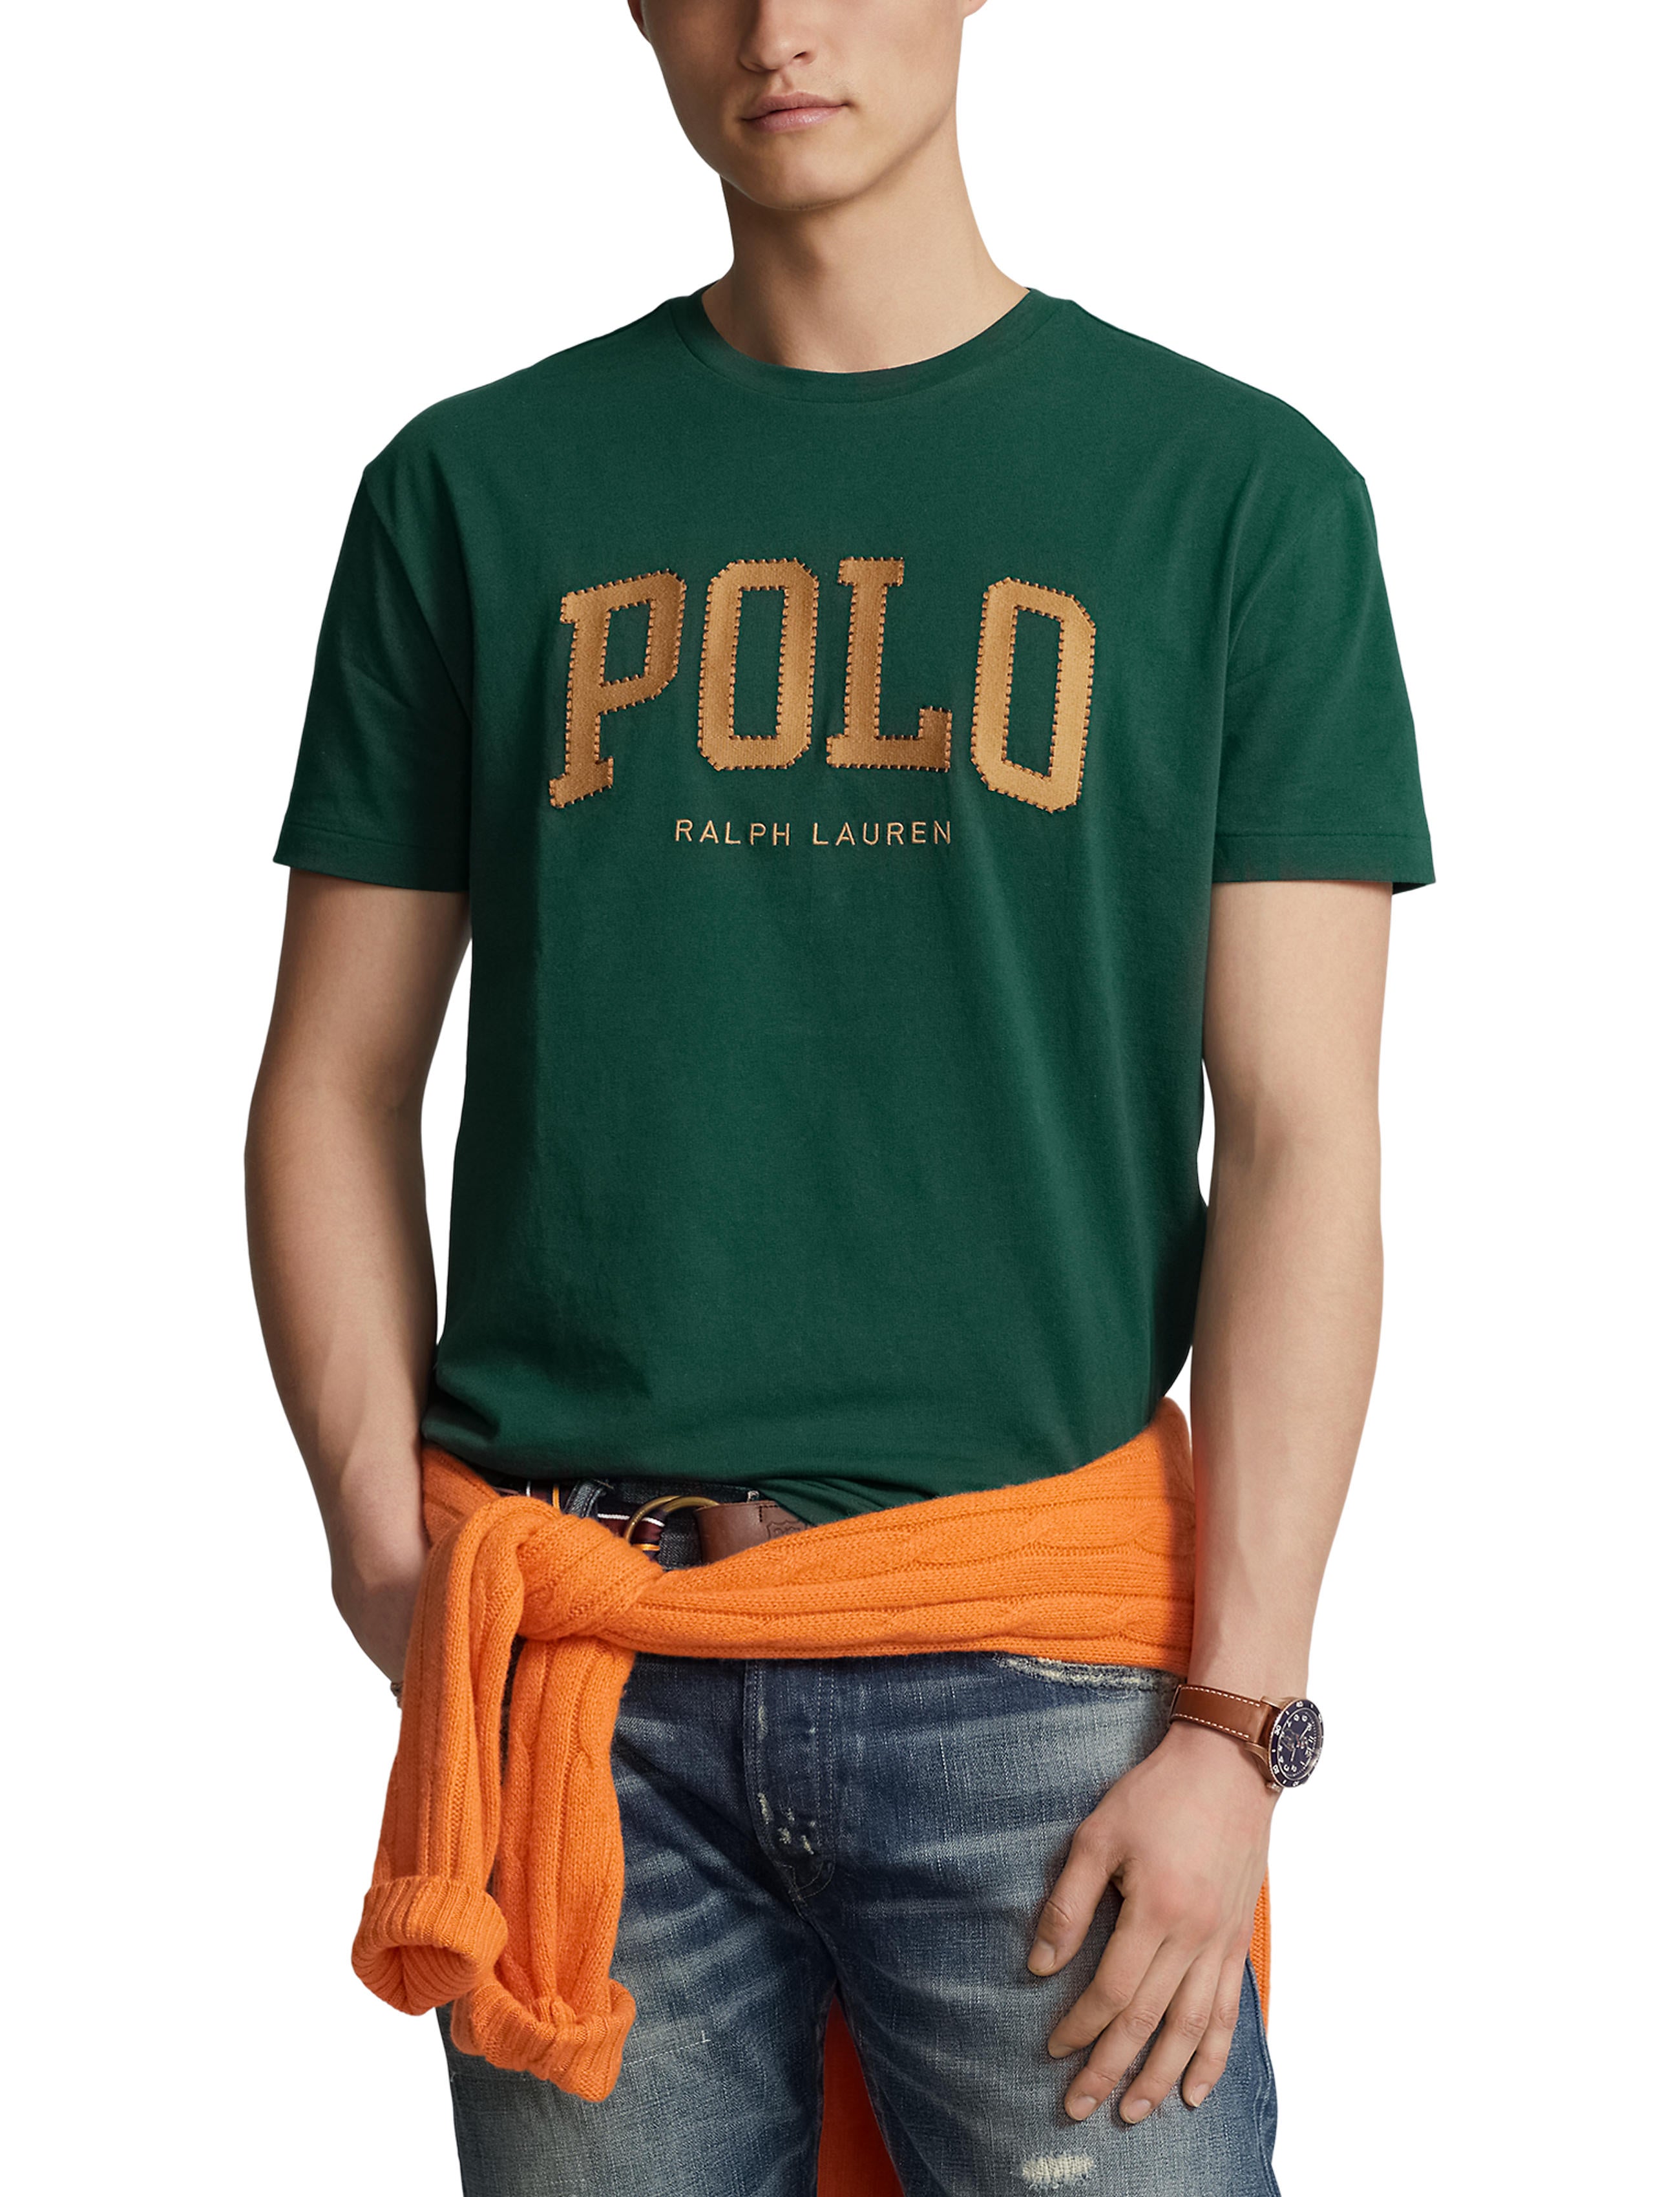 Polo Ralph Lauren Tee Shirt - Classics - Green